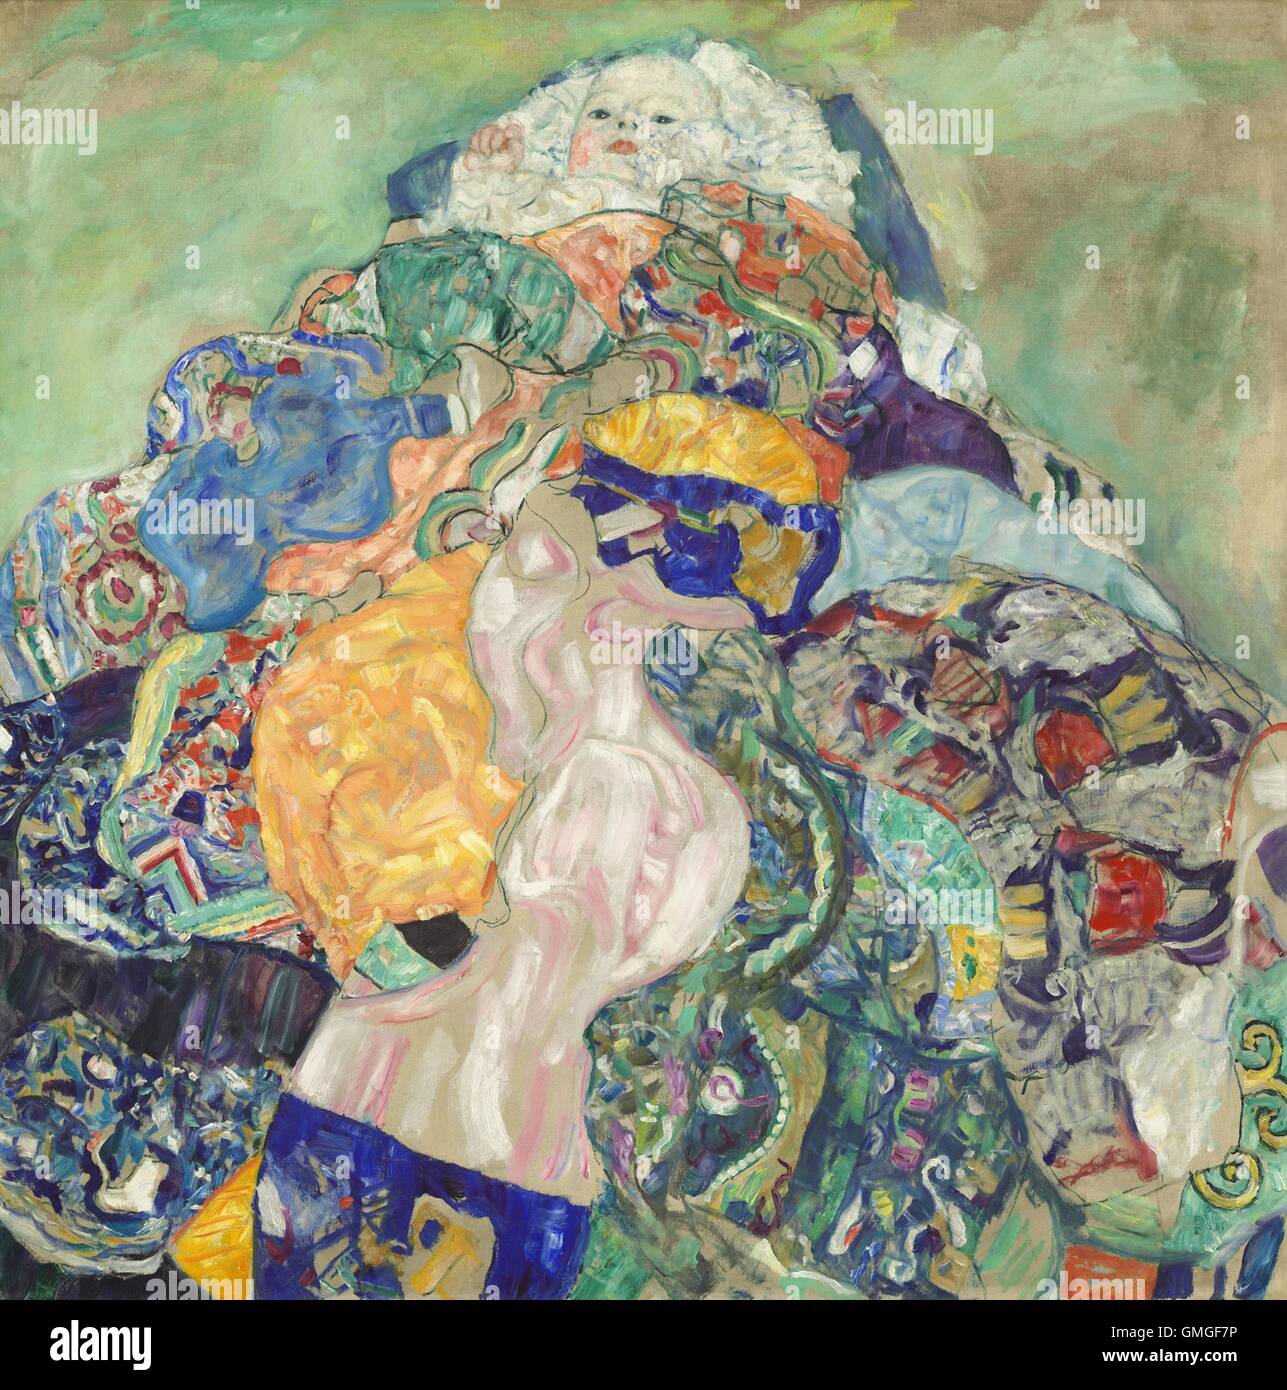 Gustav Klimt, Baby (Wiege), 1917-18, österreichische Malerei, Öl auf Leinwand. Klimt war ein österreichischer symbolistischen Maler und eines der prominentesten Mitglieder der Wiener Secession Bewegung vor dem ersten Weltkrieg. Dieses Spätwerk Reprisen Themen aus Werken Kundenorder (BSLOC 2016 6 95) Stockfoto